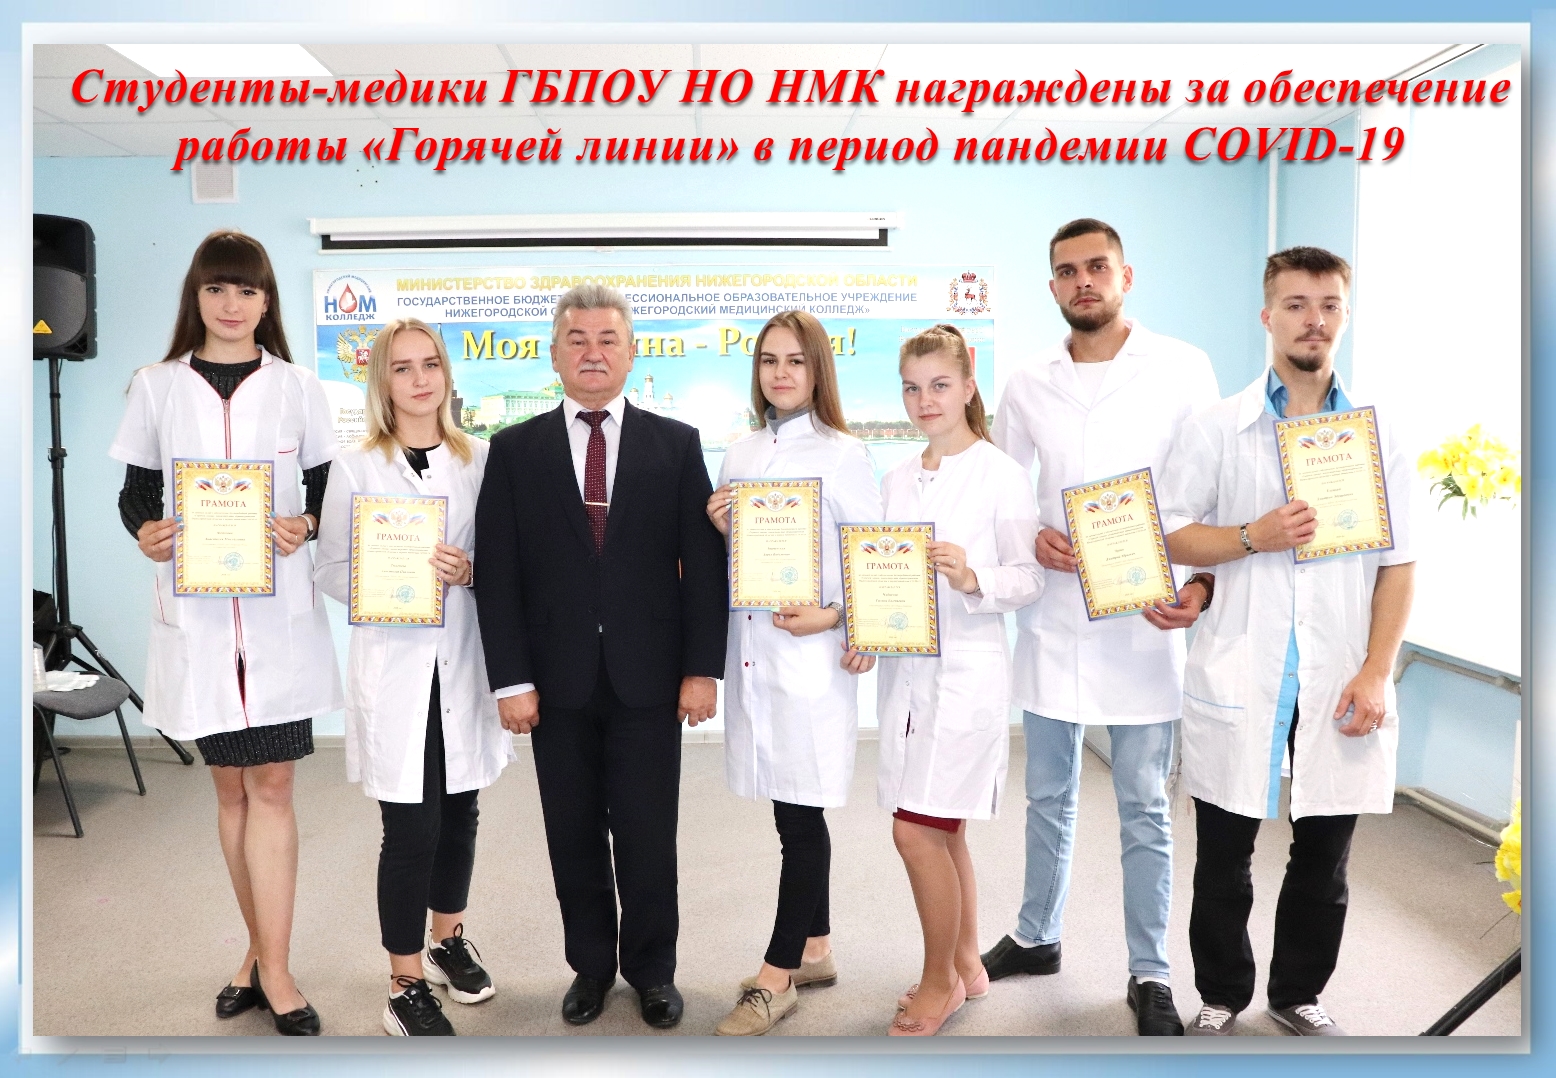 8 студентов-медиков Нижегородского медколледжа  награждены  грамотами регионального Минздрава 